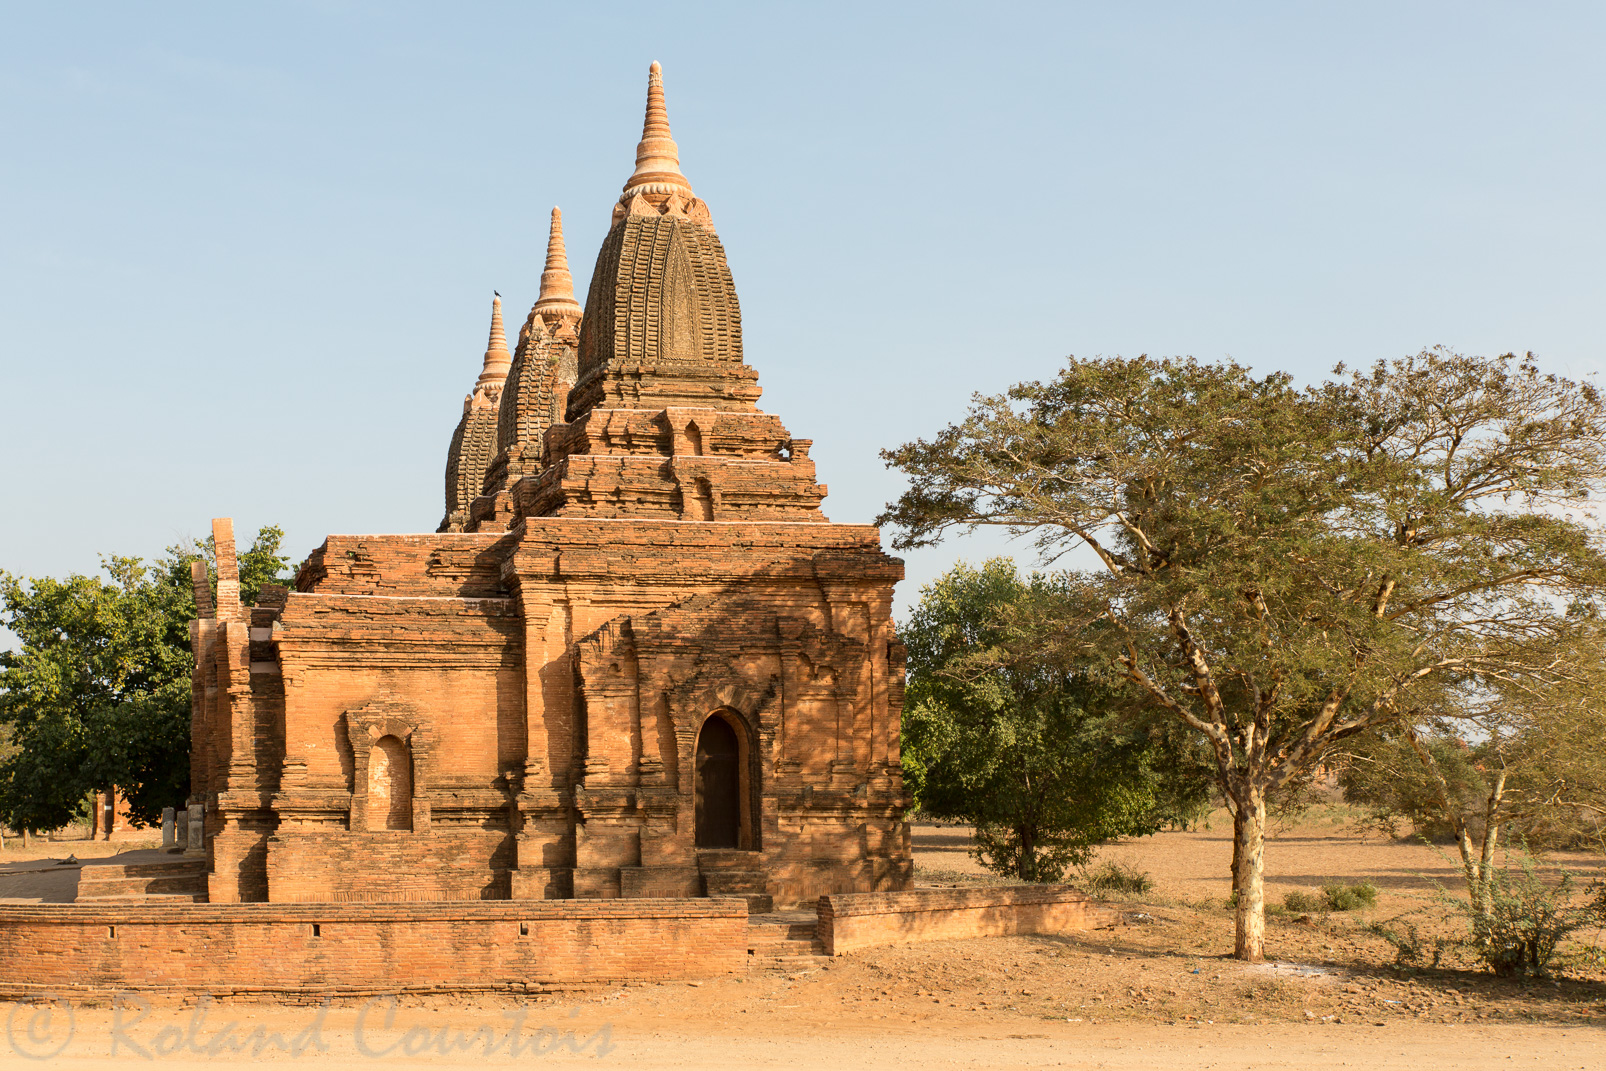 Le temple Paya Thon Zu est composé de trois temples reposant sur une plateforme commune. Les intérieurs recèlent de superbes peintures murales.